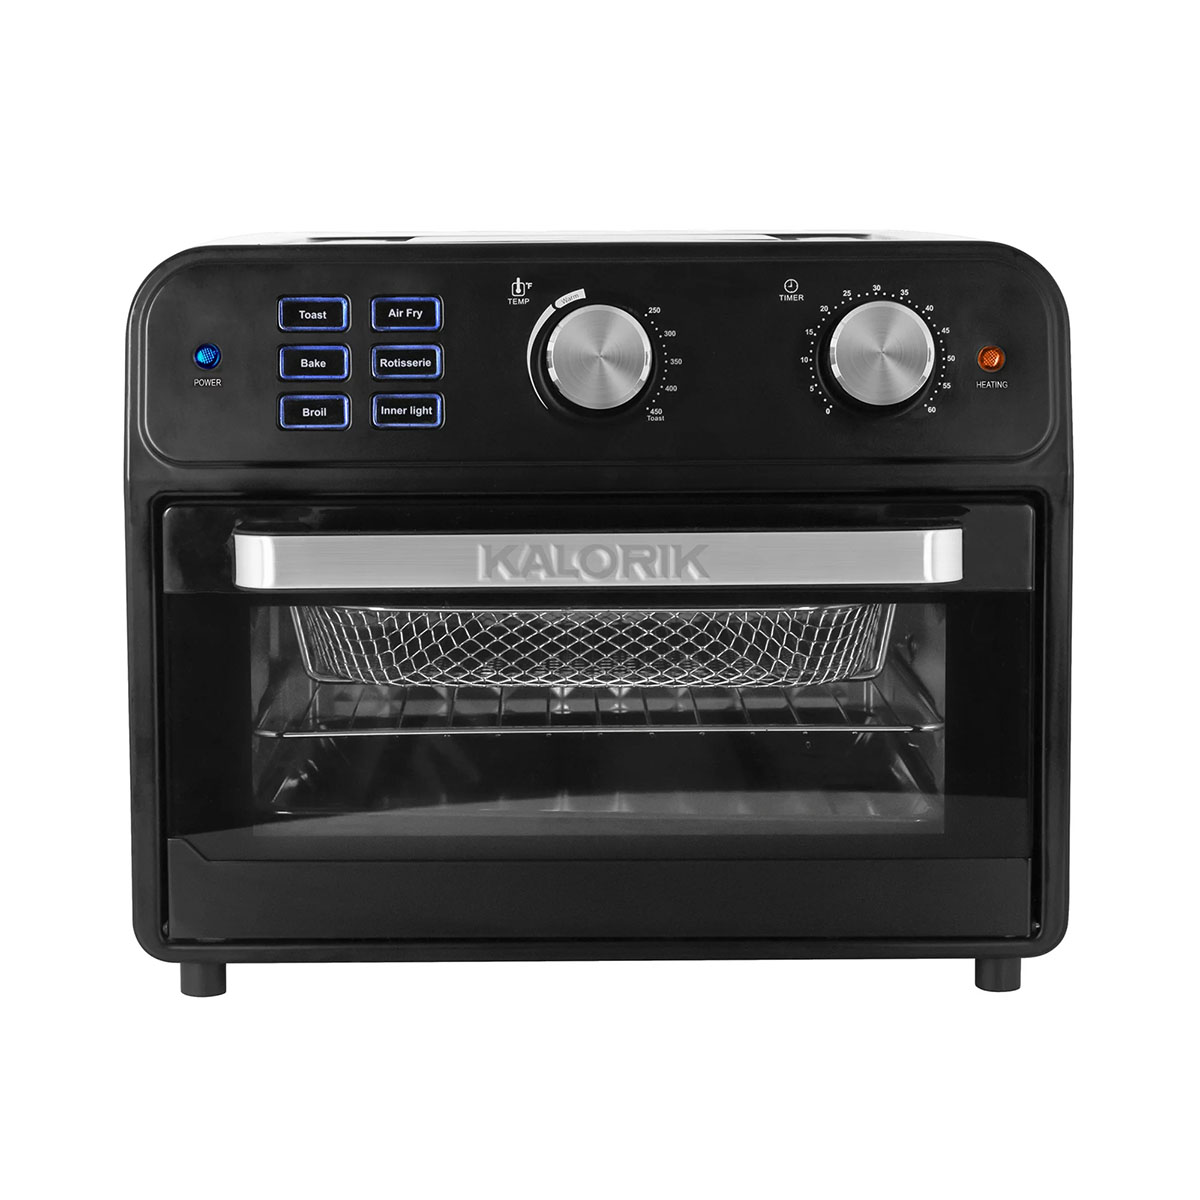 Kalorik 22qt. Digital Air Fryer Oven